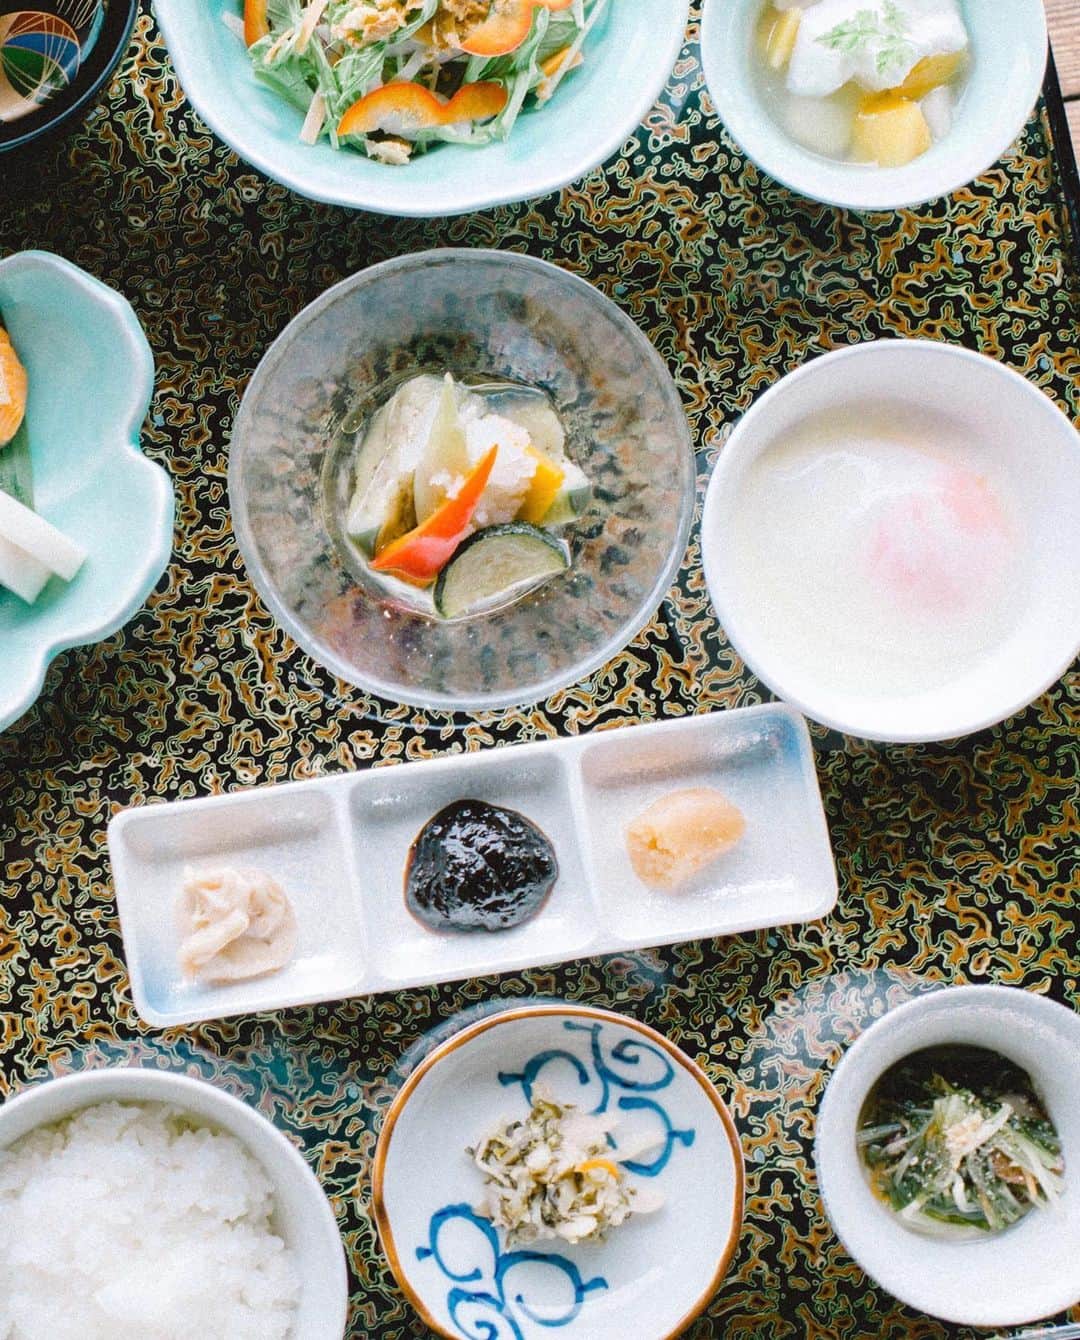 柳川藩主立花邸御花 | Yanagawa Ohanaのインスタグラム：「御花の朝ごはん。﻿ 1日の始まりは美味しい朝食から。﻿ ﻿ 満ち足りた気分になっていただきたいという想いから、ご飯がすすむ地元の食材を沢山ご用意しております。﻿ ﻿ 明太子は自家製で総料理長が何度も試行錯誤して完成した、明太子が苦手なかたでも食べられる優しいお味に仕上げています。﻿ ﻿ 海茸の粕漬けは有明海だけのご飯のお供。﻿ こりこりとした食感がやみつきになる人も。﻿ ﻿ 大広間は朝7時よりご覧いただけるため、﻿ 朝のひとときをお庭を眺めながらすごしたり、﻿ 敷地内のさんぽもすてきです。﻿ ﻿ ※婚礼で大広間を使用する場合、ご覧いただけないことがあります。﻿ ﻿ #柳川藩主立花邸御花﻿ #御花#柳川#ohana﻿ #yanagawa #fukuoka﻿ #立花家#歴史﻿ #御花の朝食﻿ #ホテル朝食﻿ #旅館の朝食﻿ #朝ごはん﻿ #水辺のある暮らし﻿ #旅行#ホテル#料亭﻿ #料亭旅館#福岡旅館﻿ #日本料理#福岡料亭﻿ #柳川旅行﻿ #九州旅行﻿ #福岡旅行﻿ #文化財ホテル﻿ #文化財旅館﻿ #国指定名勝﻿ #日本庭園﻿ #お庭」